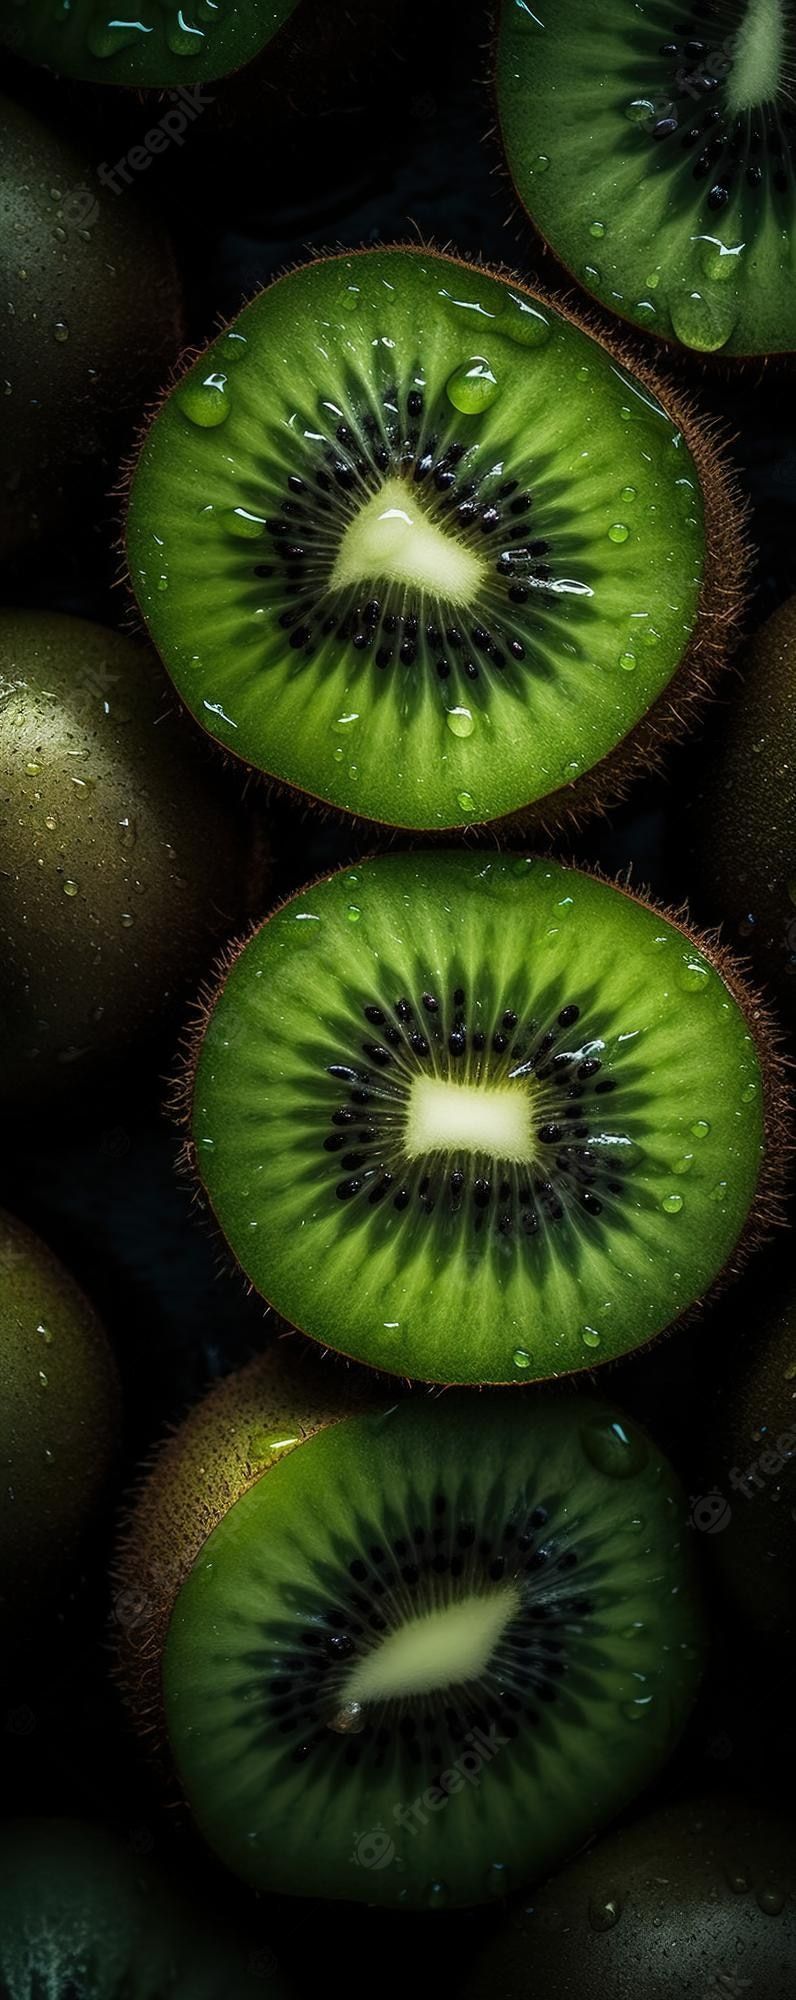 Kiwi Macro Image